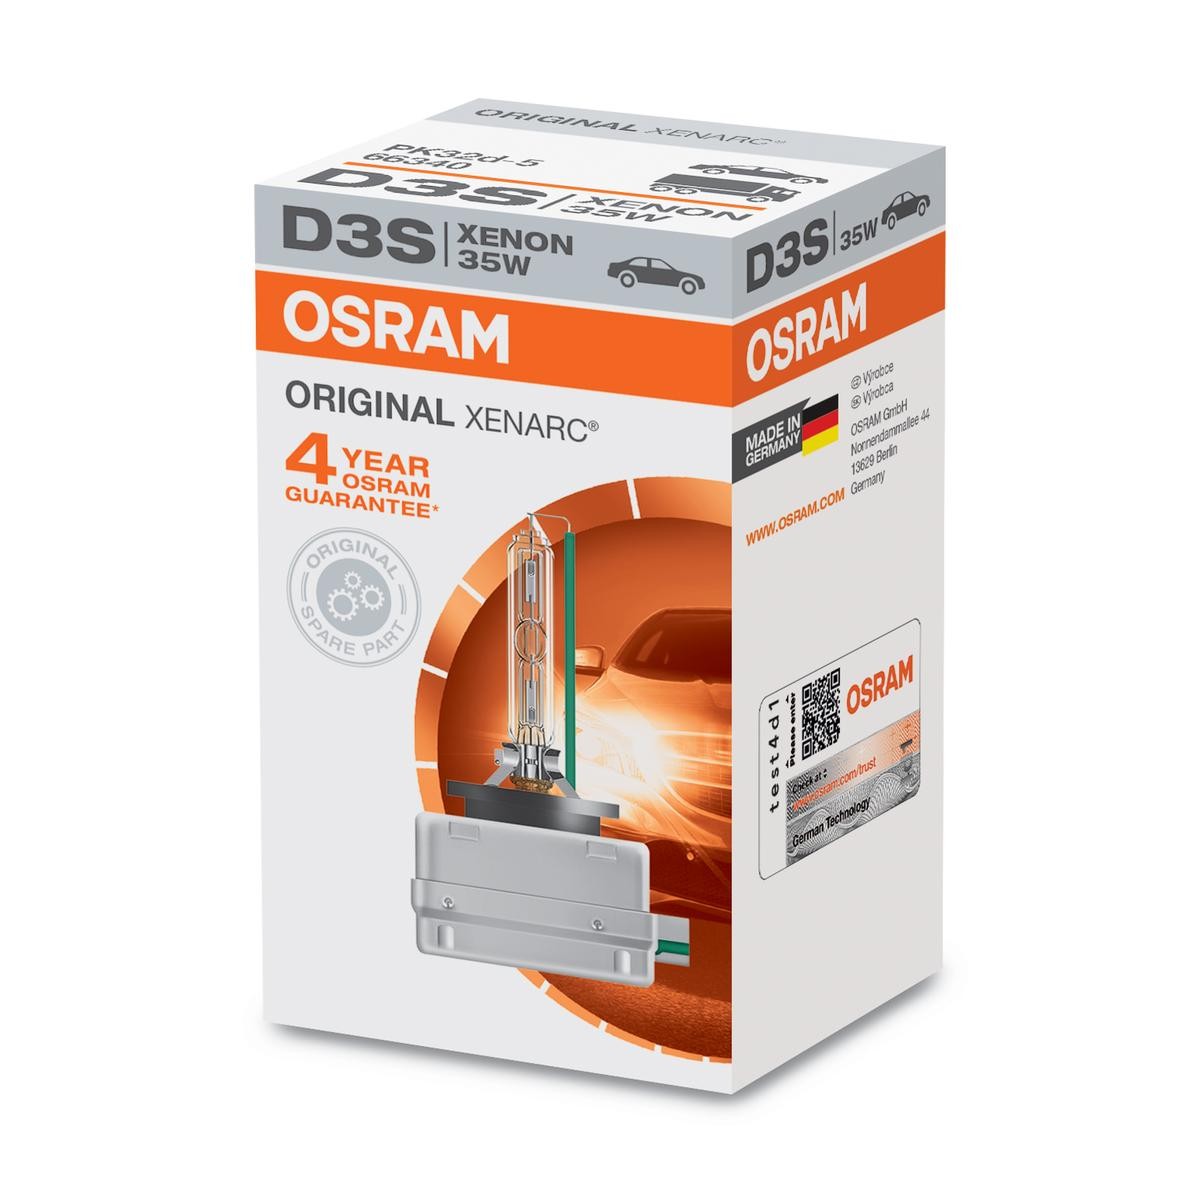 D3S OSRAM XENARC ORIGINAL D3S 42V 35W4100K Xenon Glühlampe, Fernscheinwerfer 66340 günstig kaufen